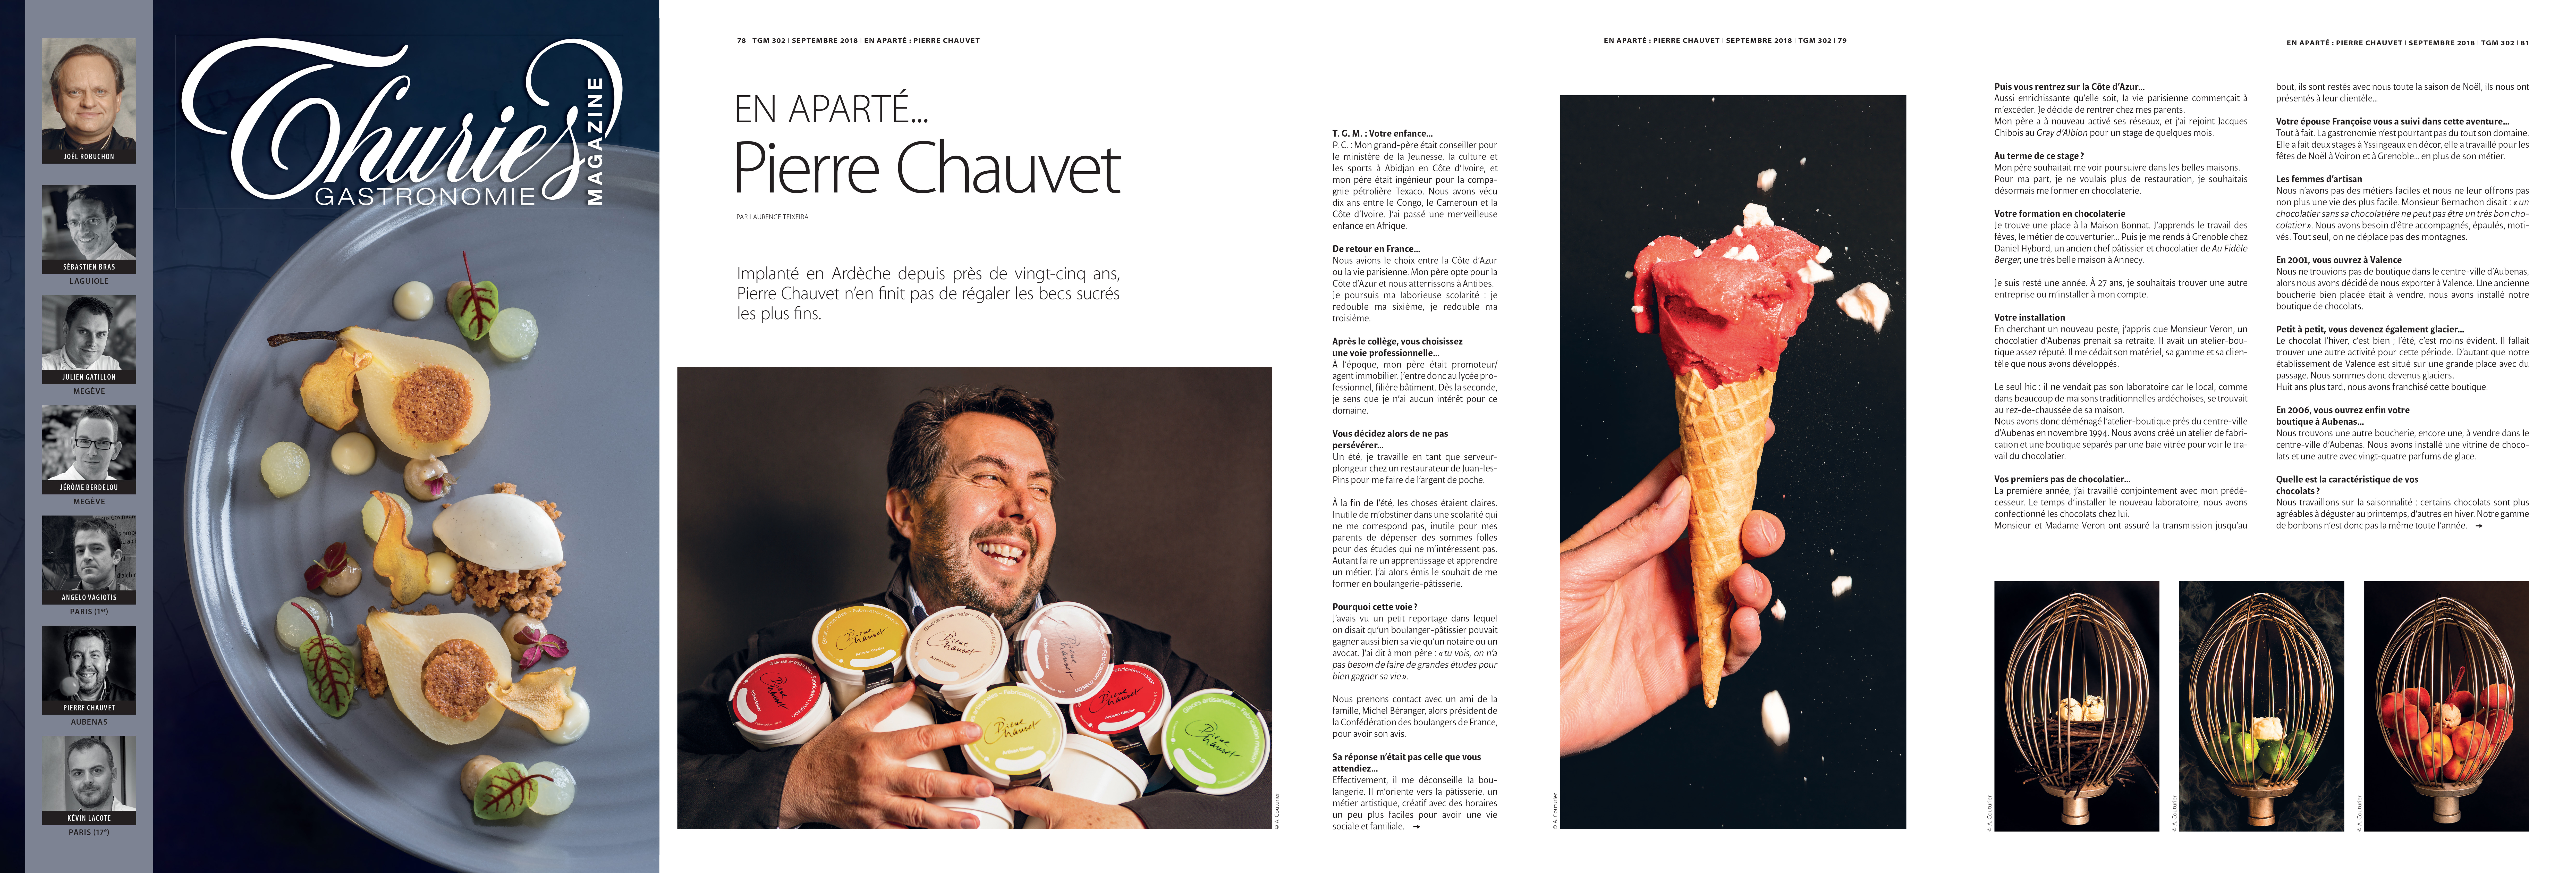 Thuries  gastronomie Magazine septembre 2018, Portrait de Pierre Chauvet, Glacier, ©Alban Couturier